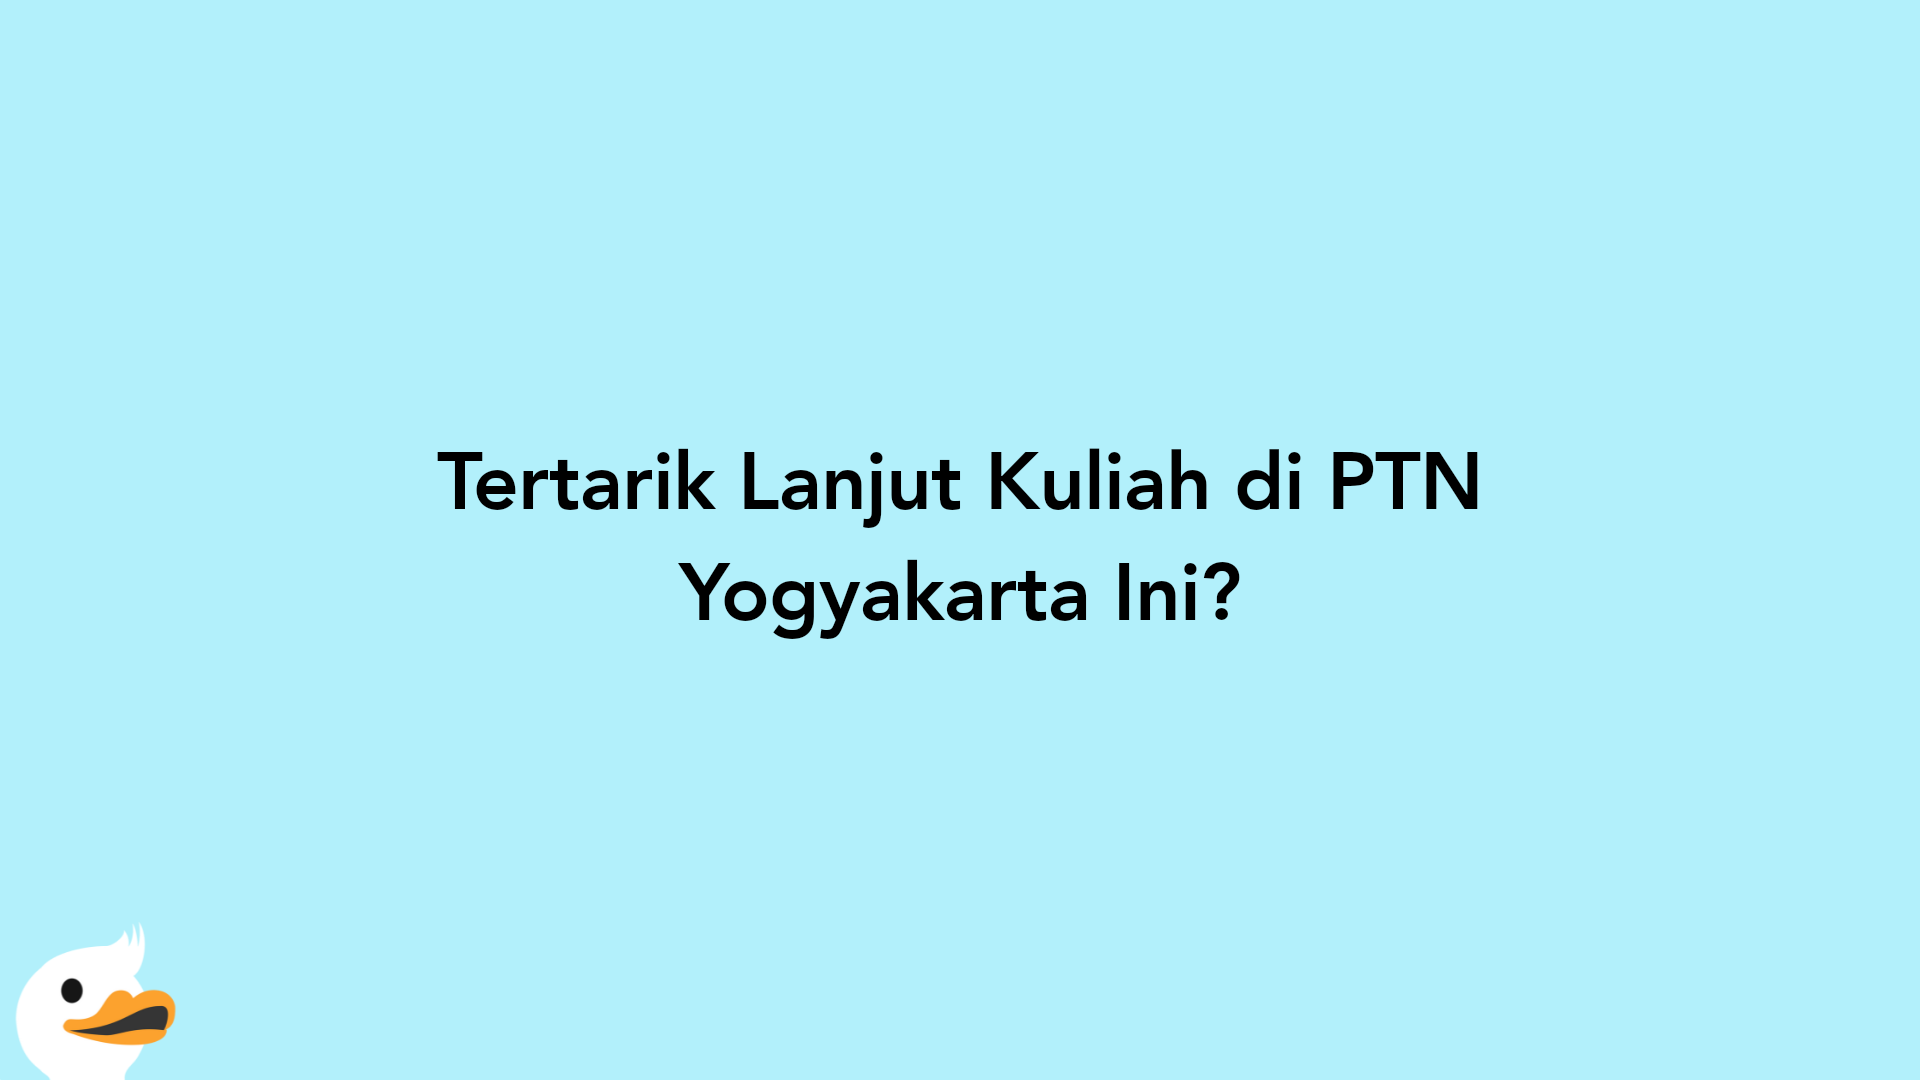 Tertarik Lanjut Kuliah di PTN Yogyakarta Ini?